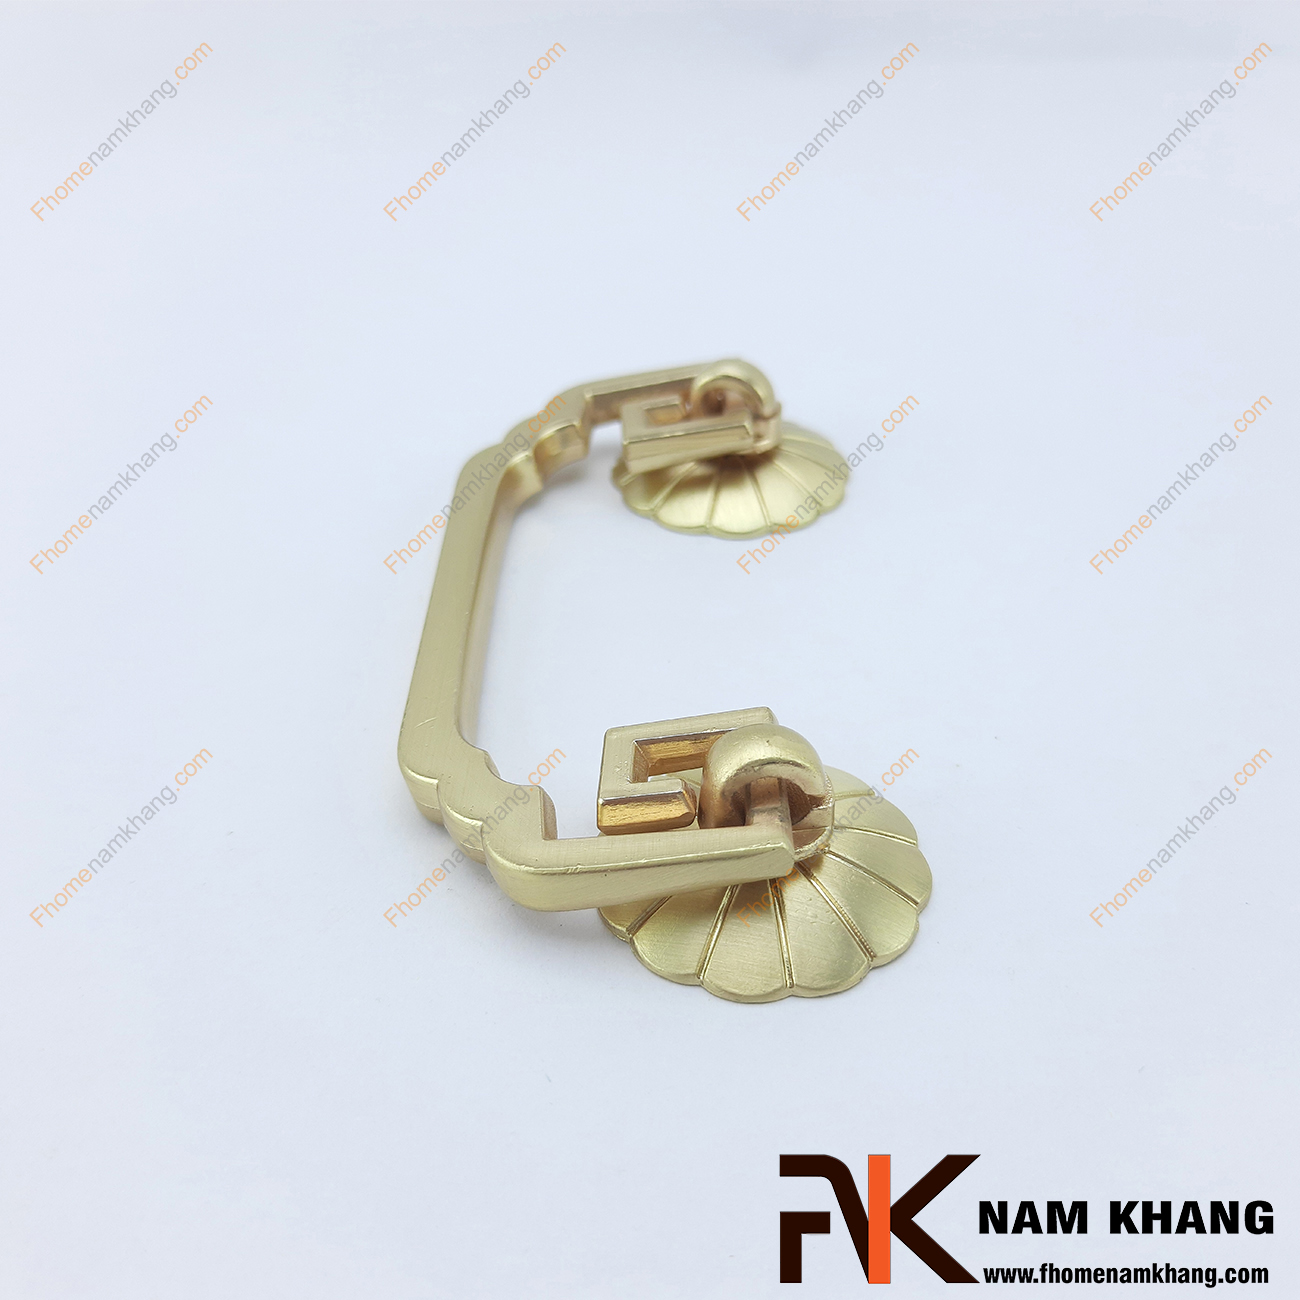 Tay nắm tủ dạng vòng màu vàng NK100-64V là một dạng tay nắm kết hợp khi thiết kế với 2 khuôn dạng bao gồm phần đế và vòng nắm.